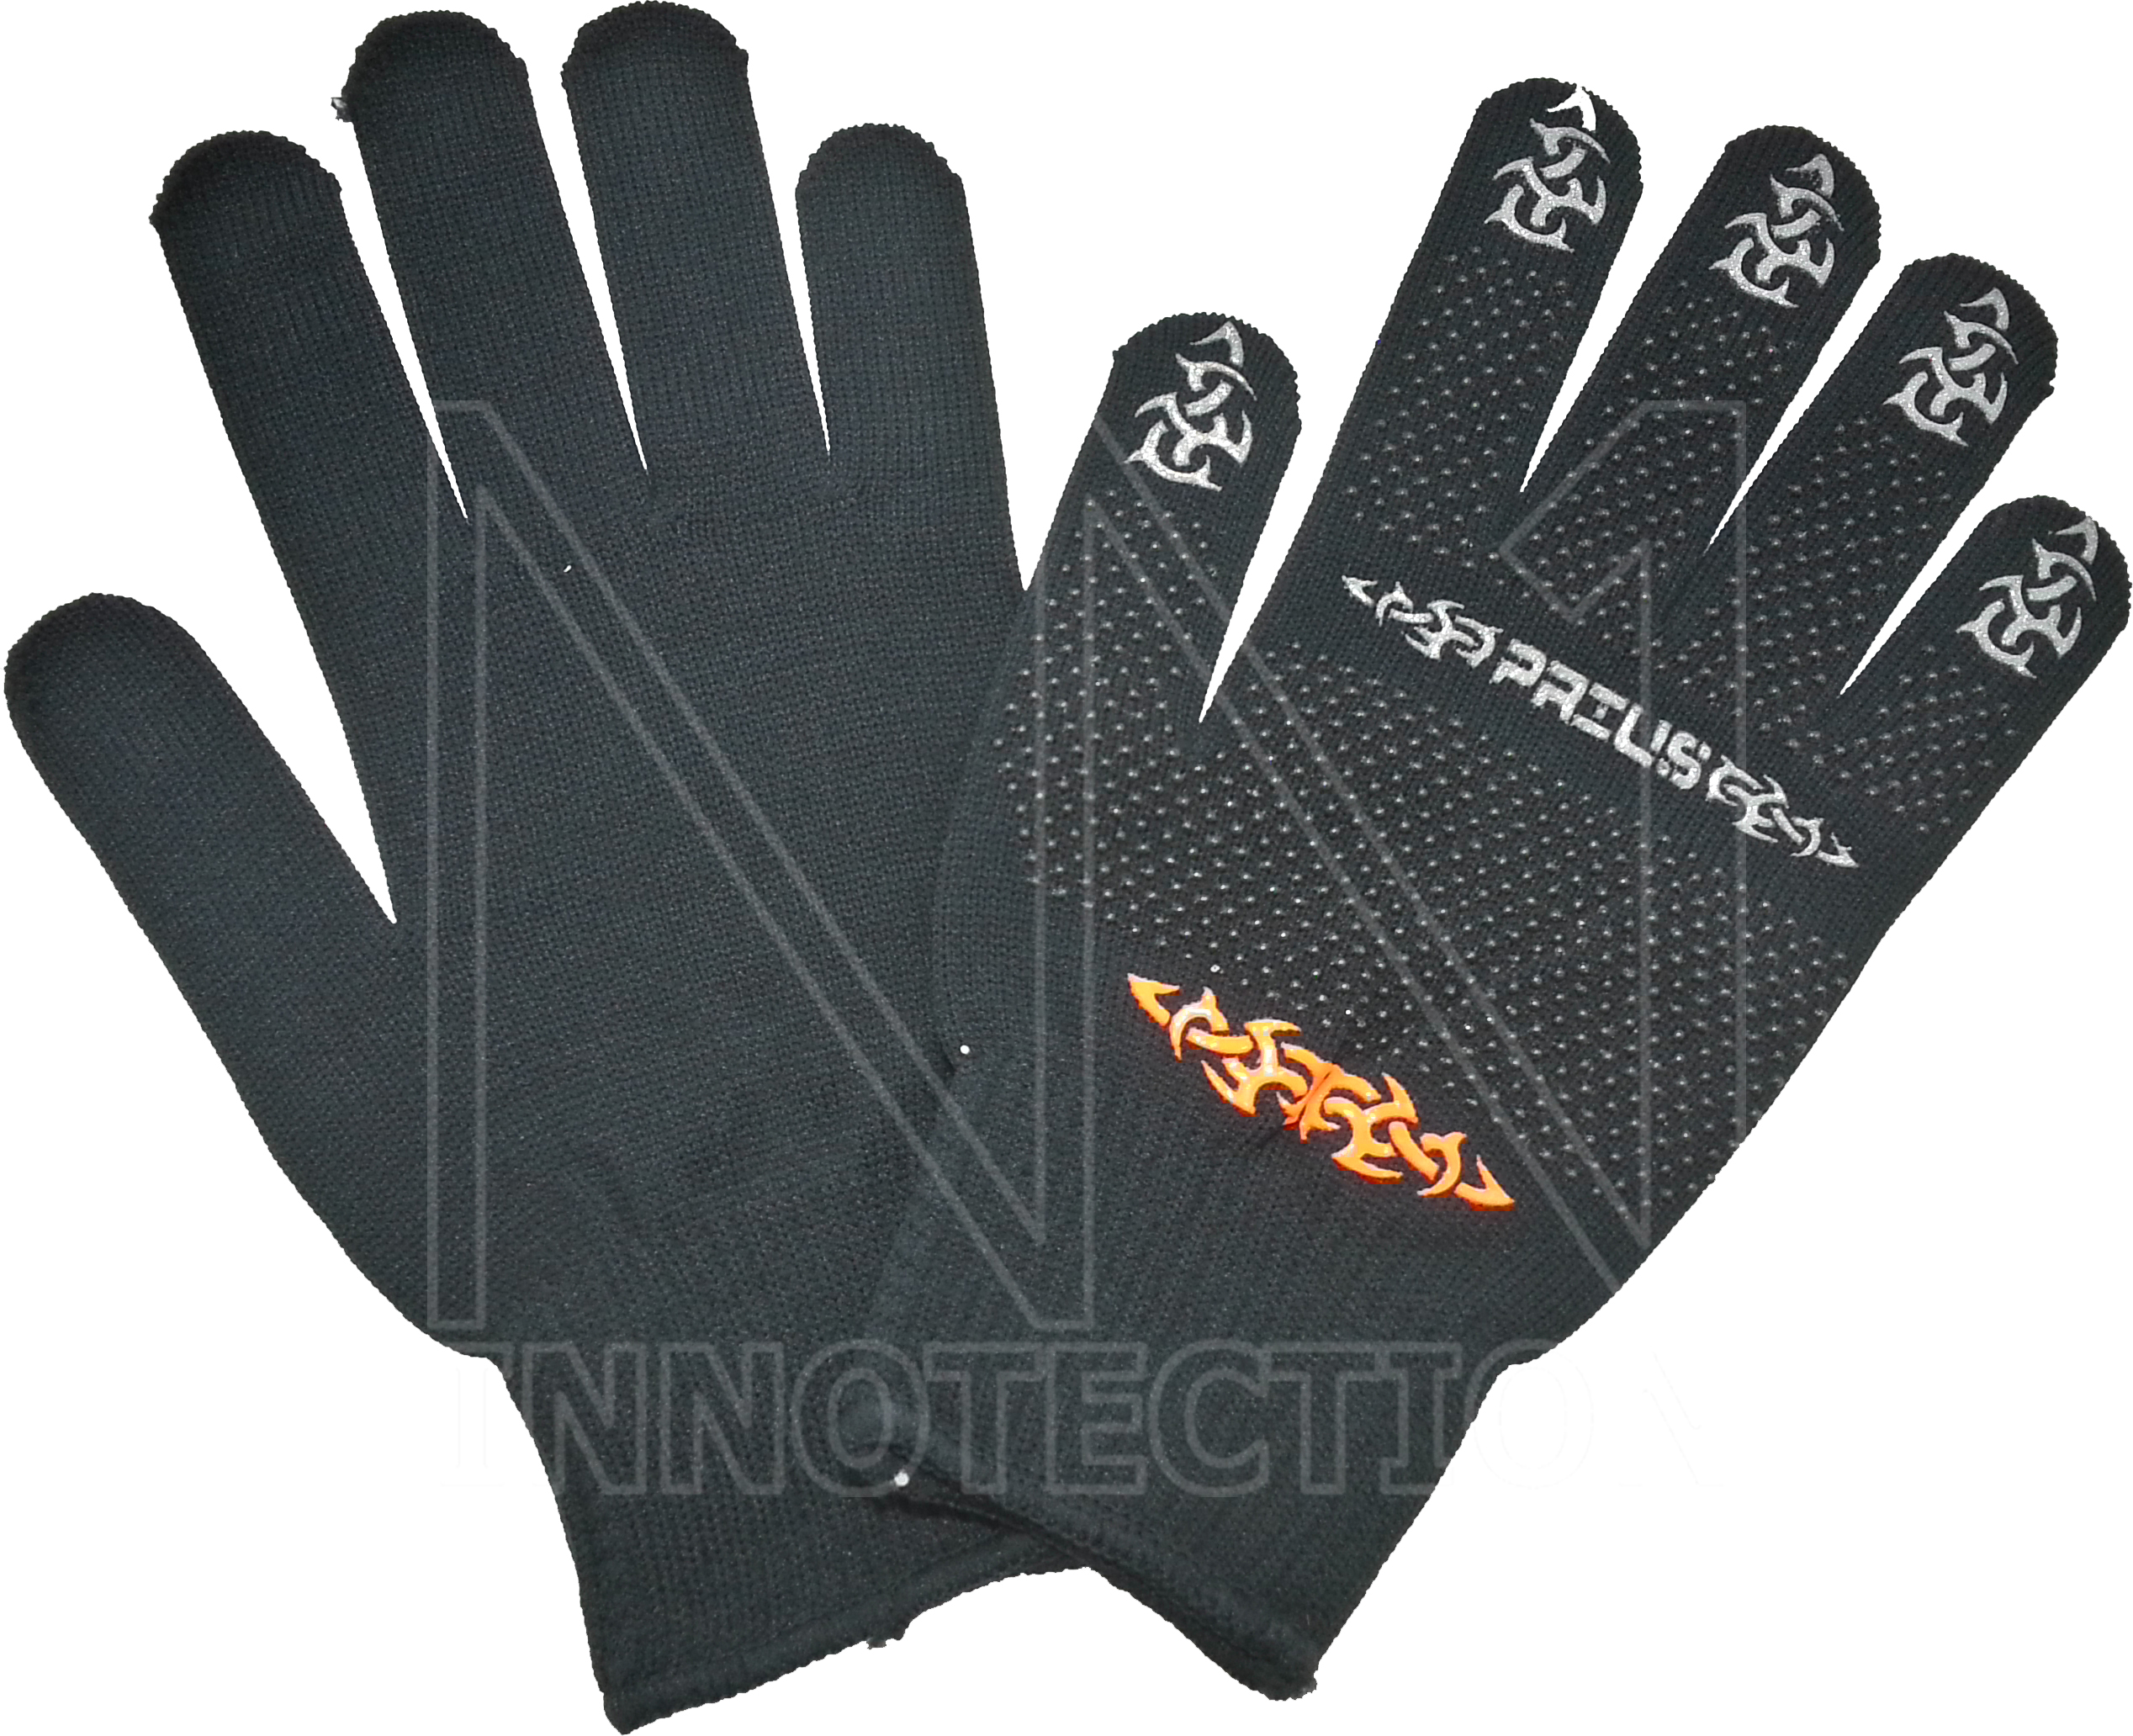 ถุงมือเต็มนิ้ว  รุ่น G1 ขับมอเตอร์ไซค์  กันแดด Gloves